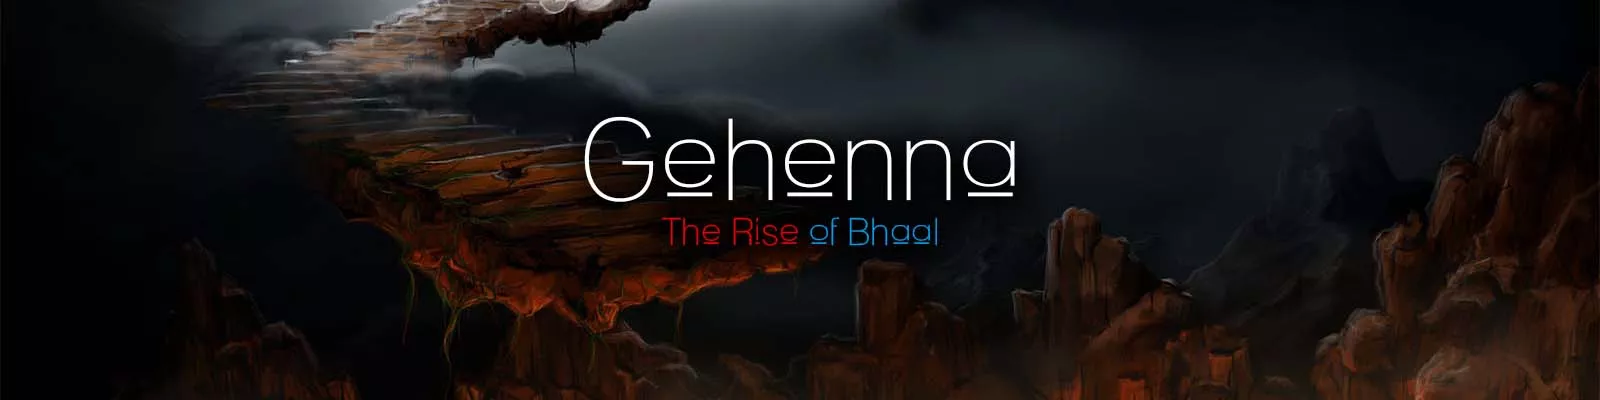 Gehenna: Cynnydd Bhaal